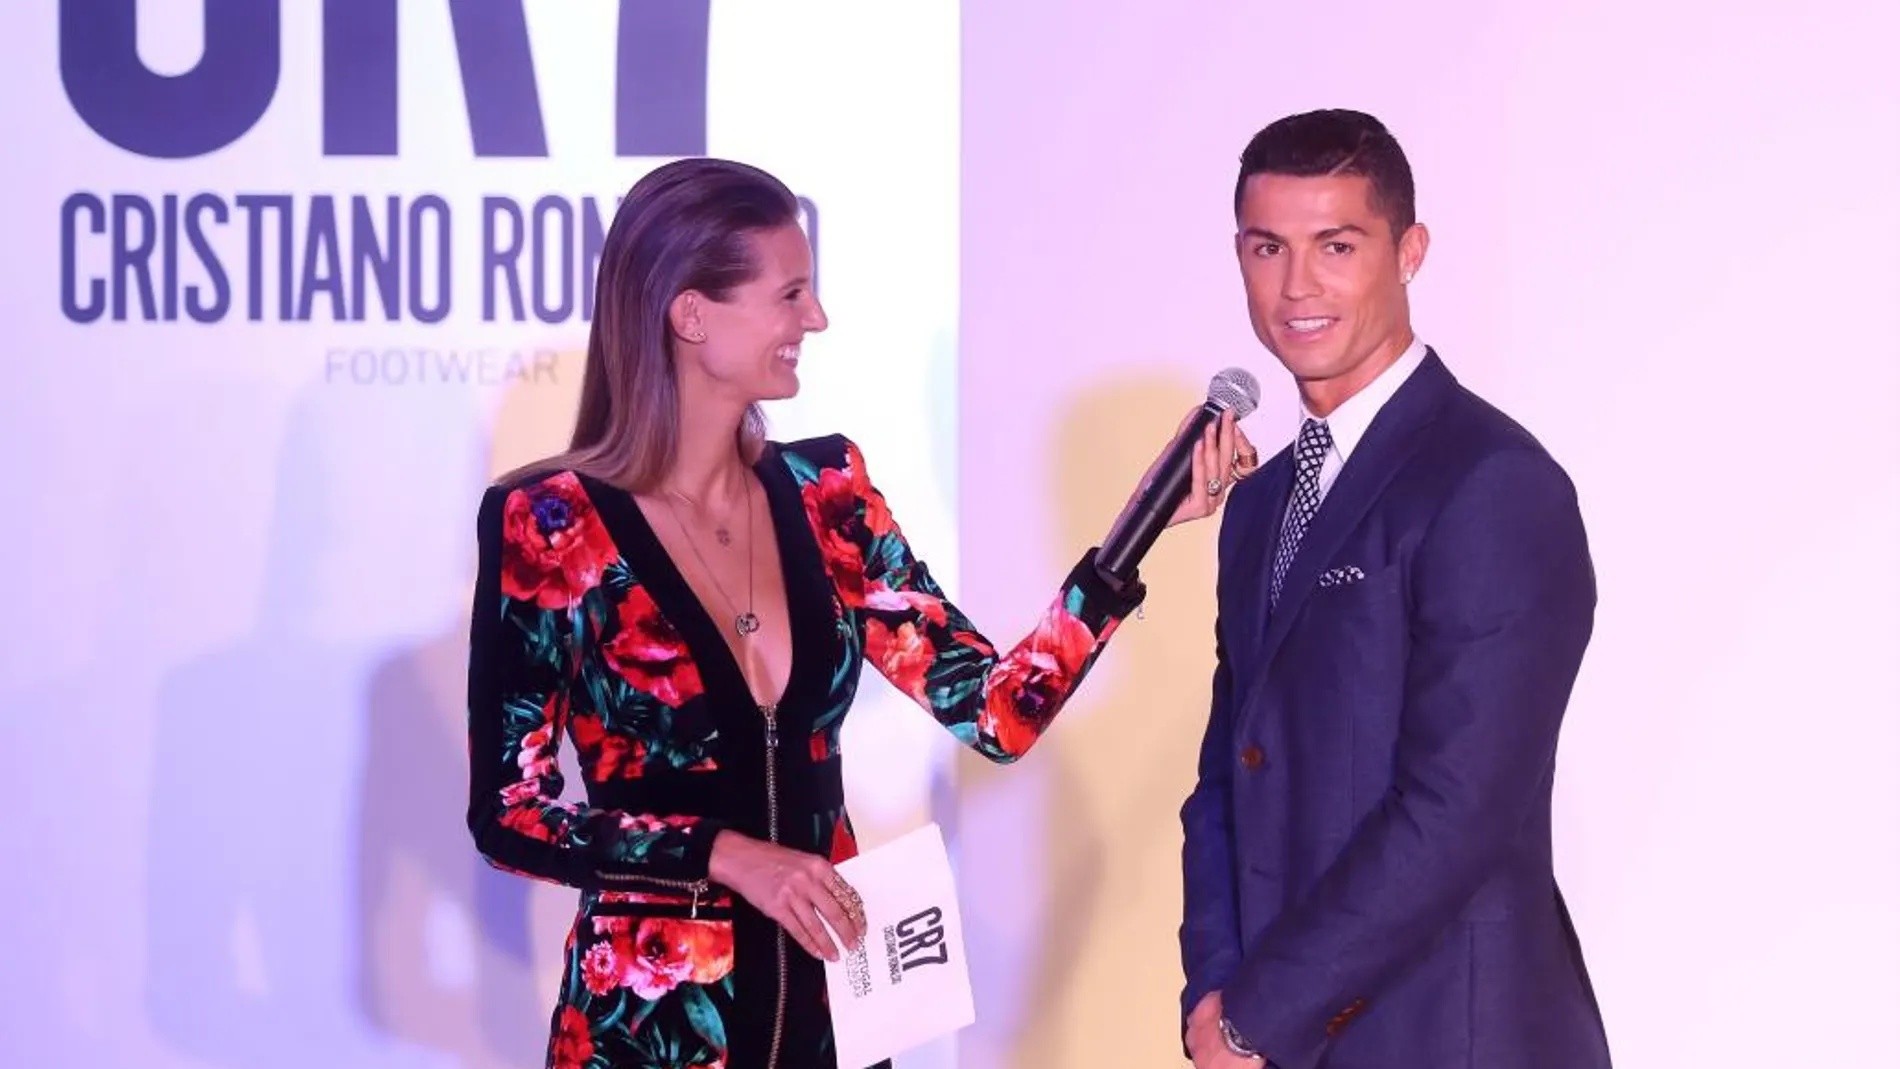 El delantero de la selección de fútbol portuguesa Cristiano Ronaldo presenta su nueva línea de calzado "CR7"